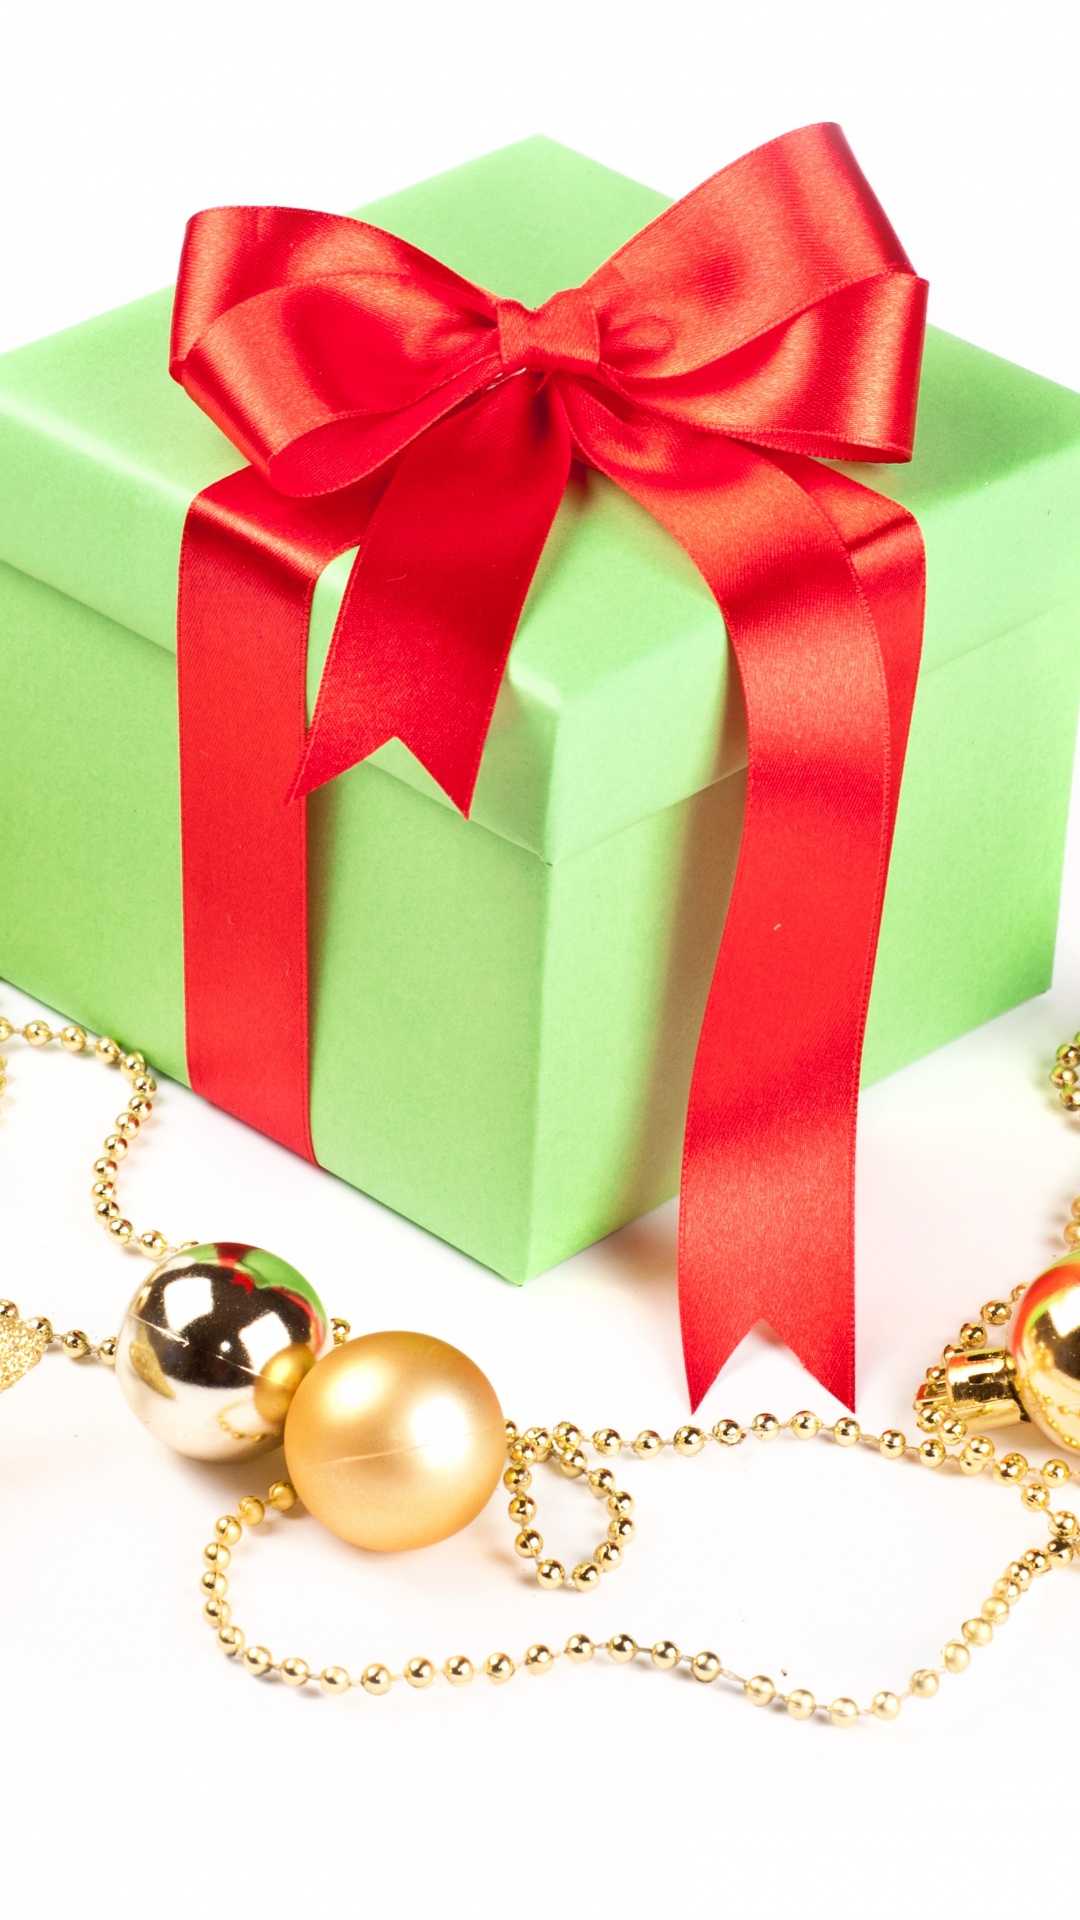 圣诞节的装饰品, 礼物, 圣诞节那天, 新的一年, 礼品包装 壁纸 1080x1920 允许